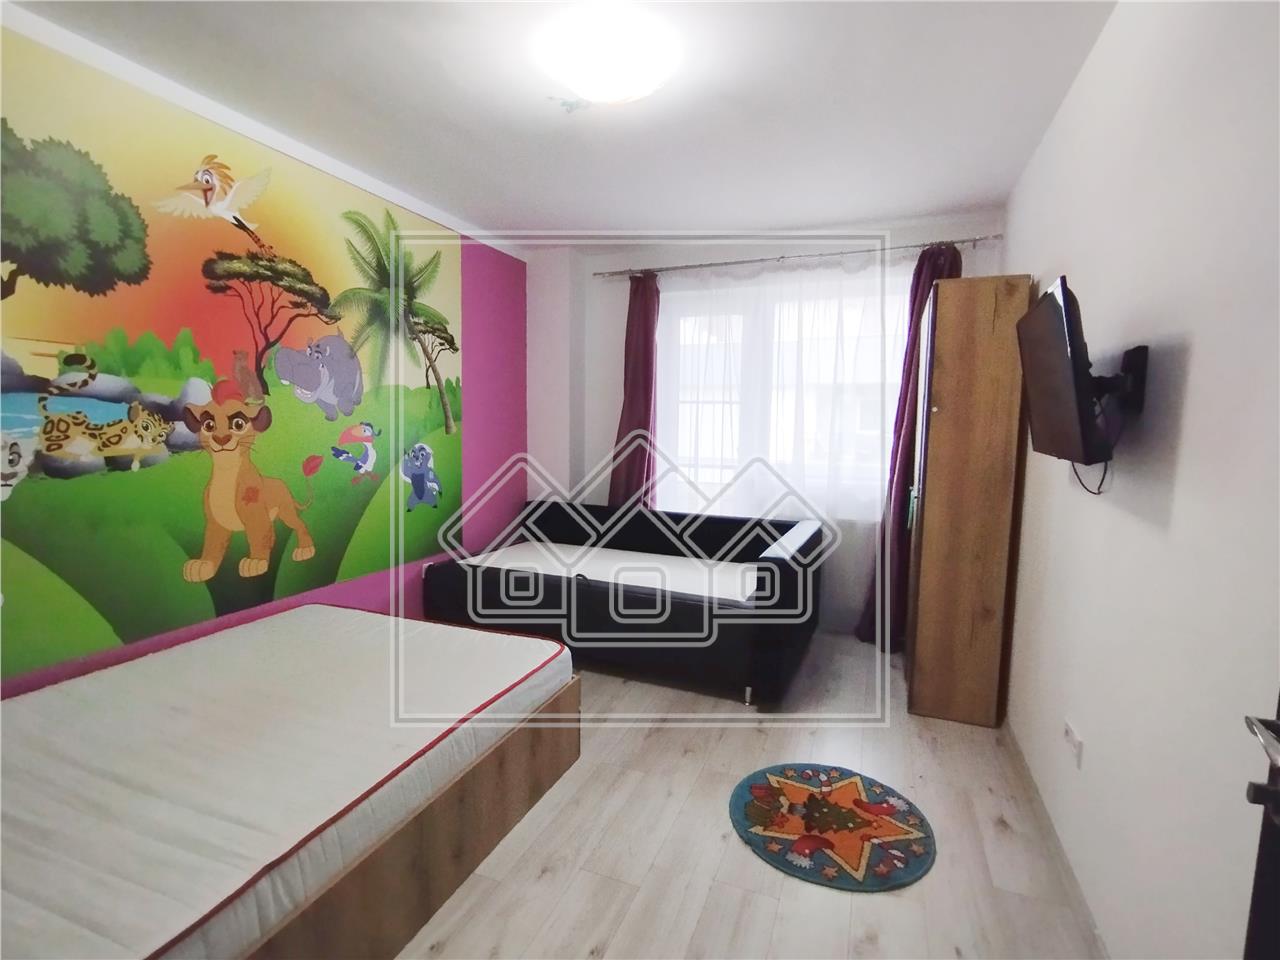 Apartament de vanzare in Sibiu - 3 camere, 2 bai, garaj subteran